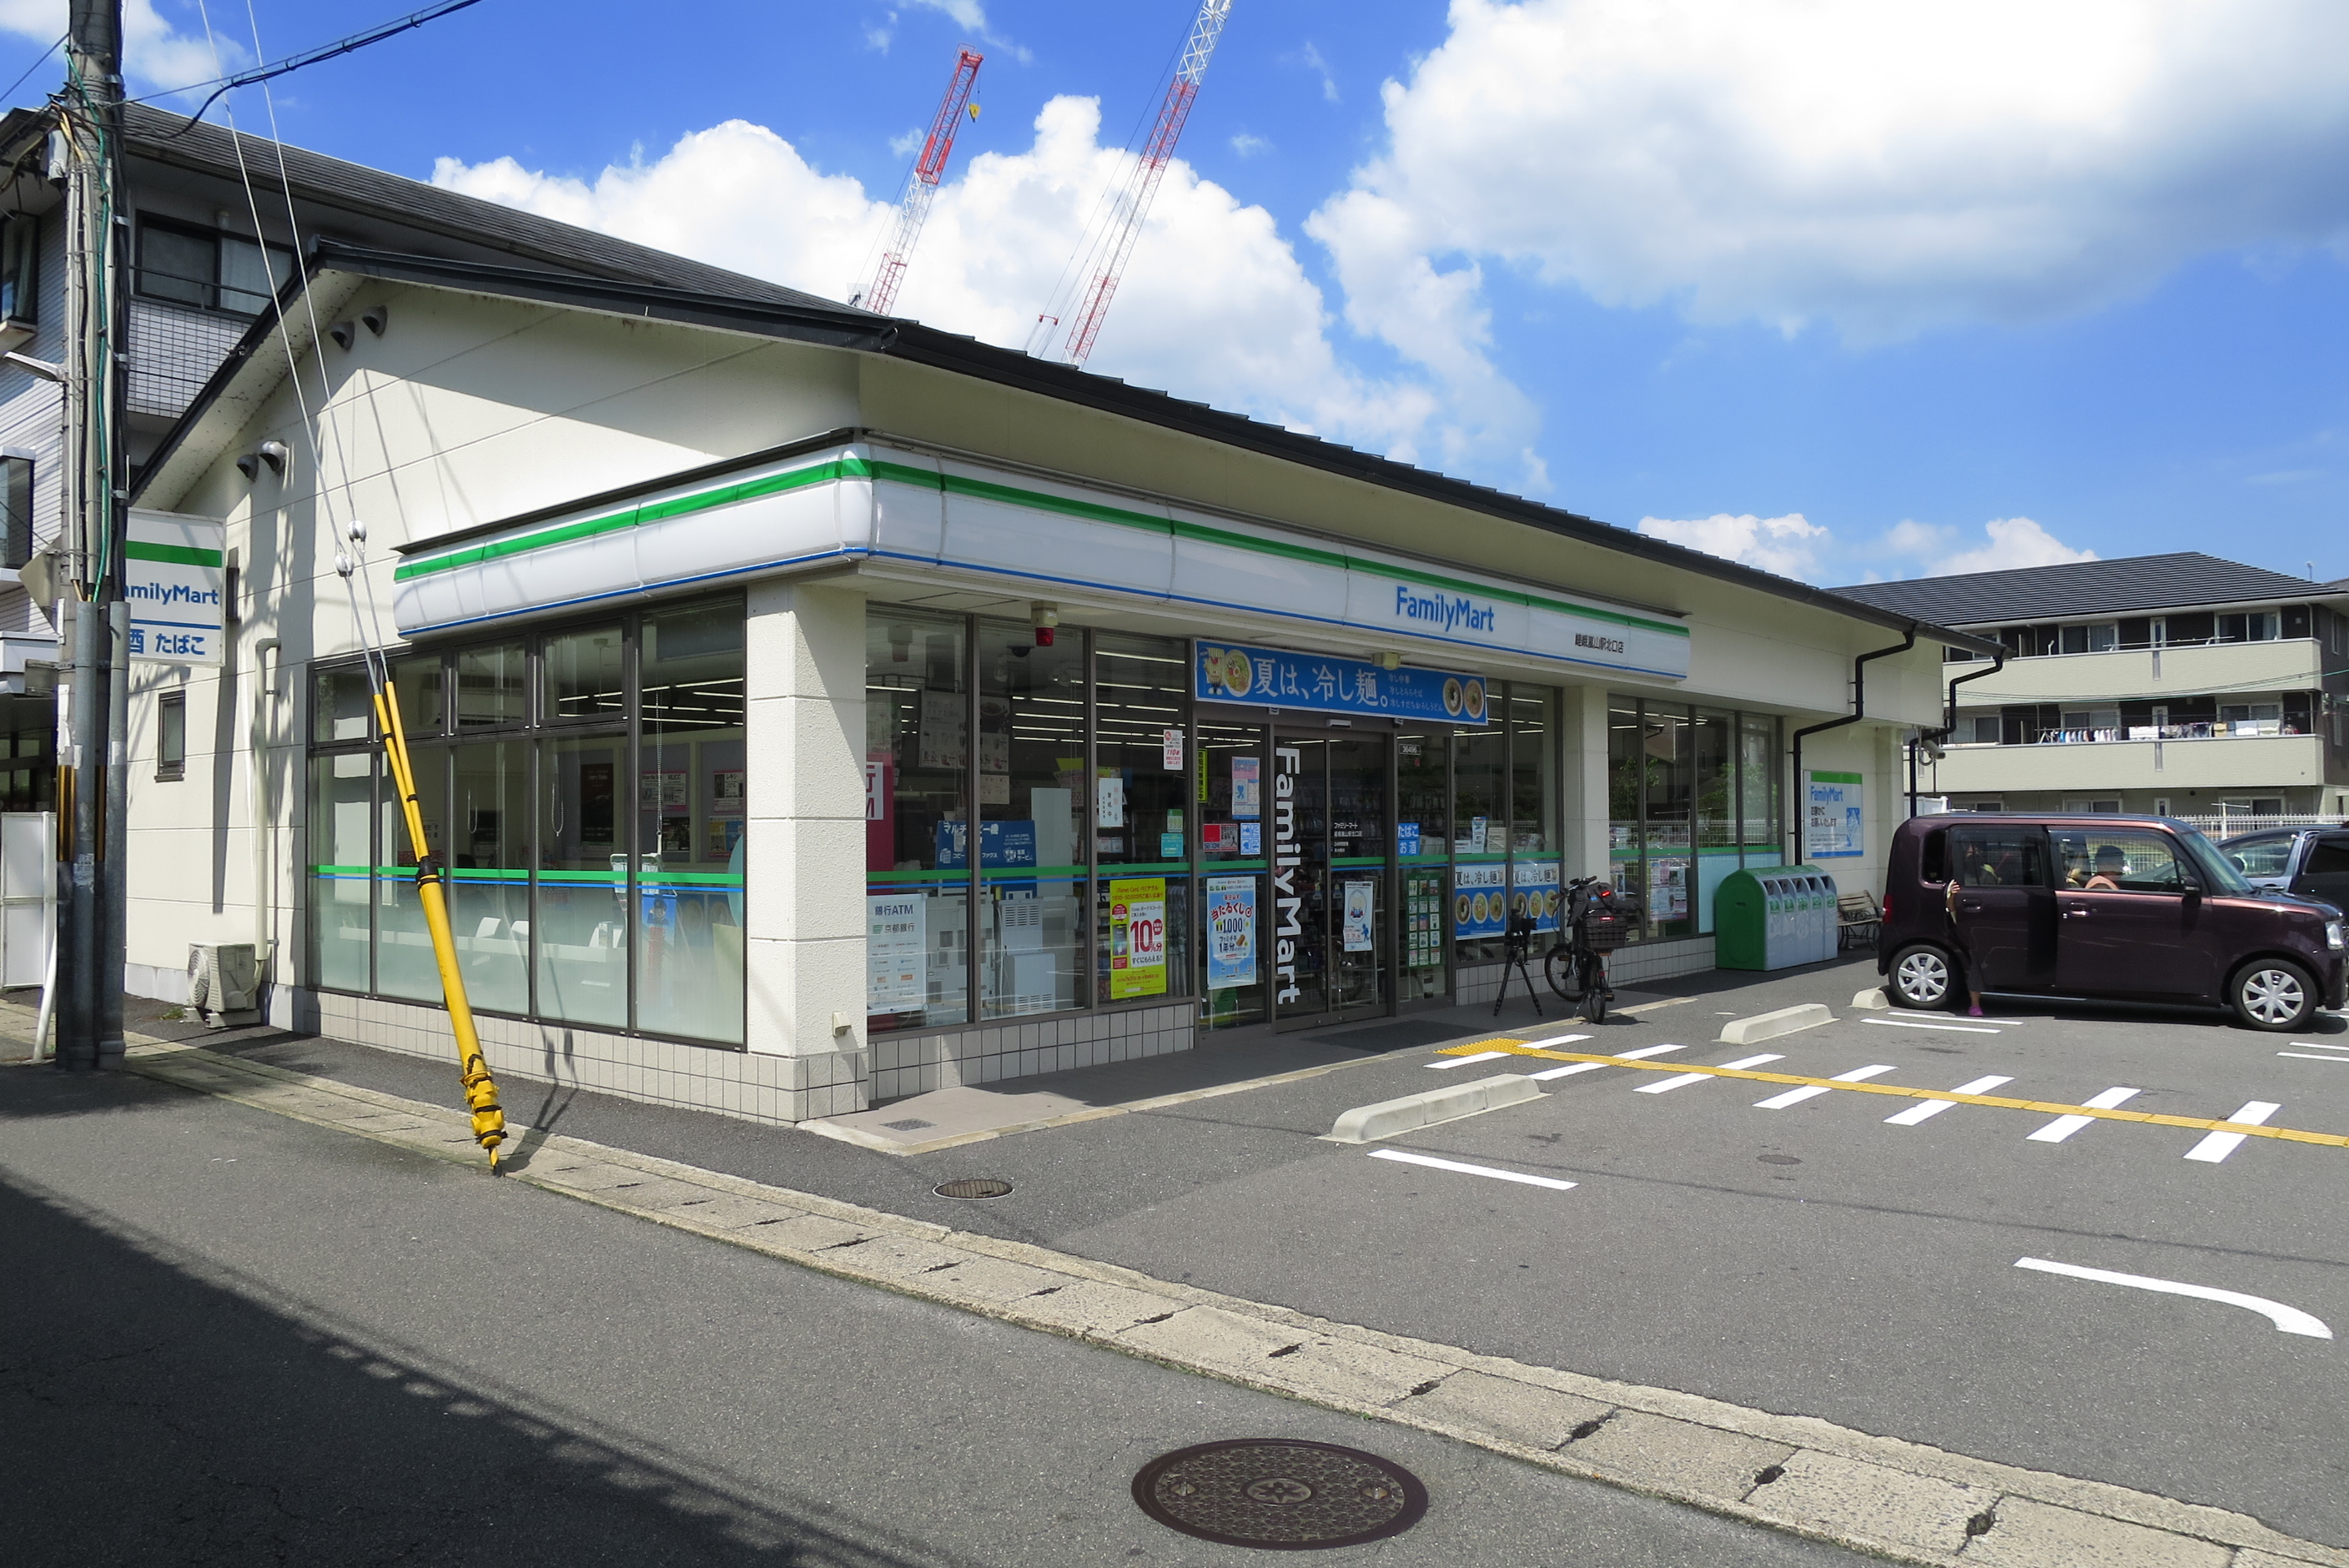 嵯峨嵐山駅近くのファミリーマート。店内で食べれるスペースあり。夏期は13時過ぎると直射日光で暑いです